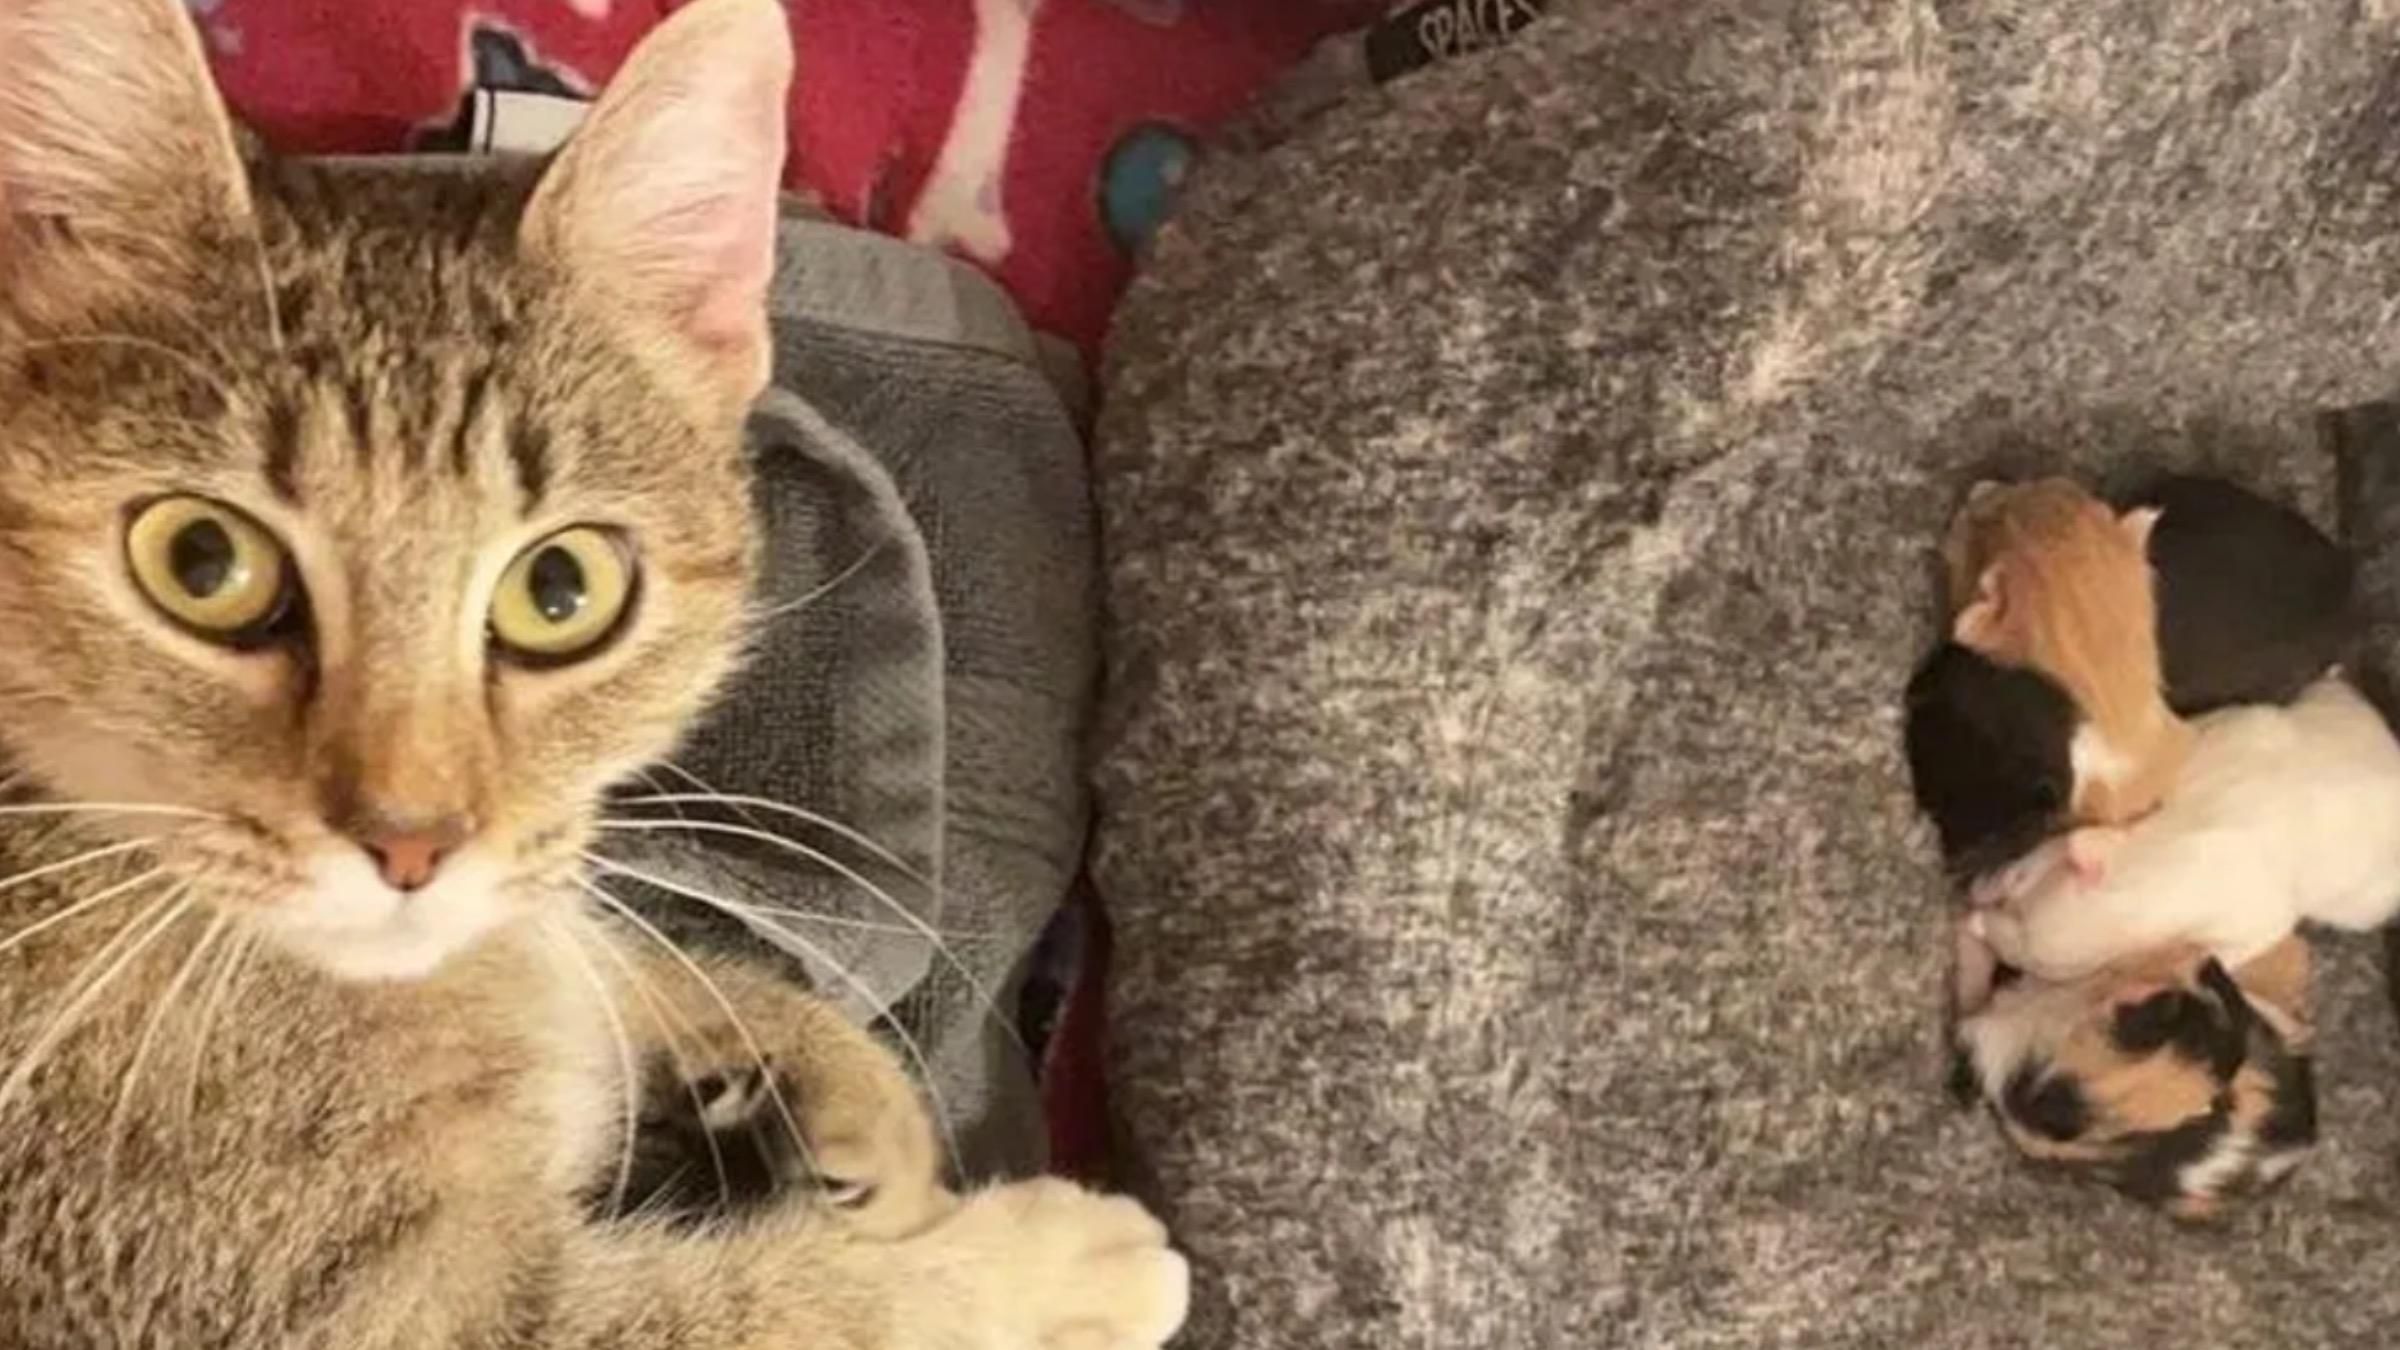 "Будь ласка, допоможіть нам": жінка врятувала вагітну кішку, яку кинули господарі - Pets